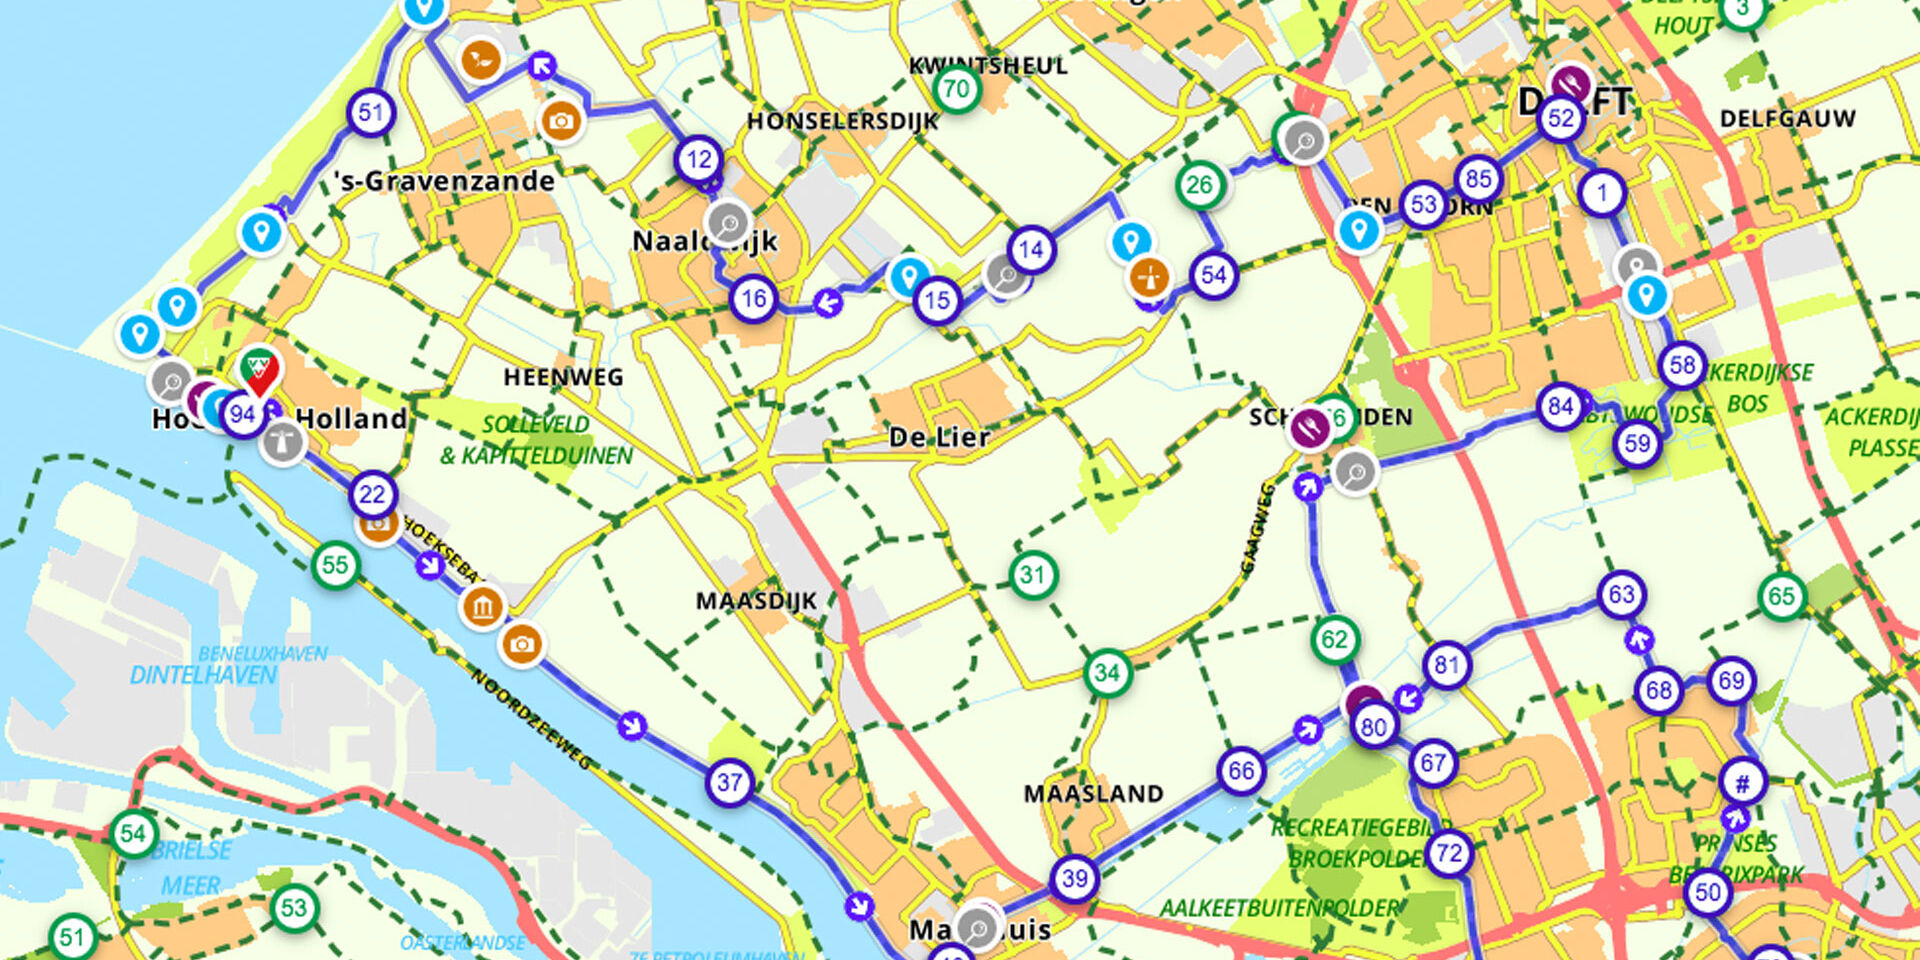 afbeelding van een routekaart met een fietsroute in de regio van het Westland